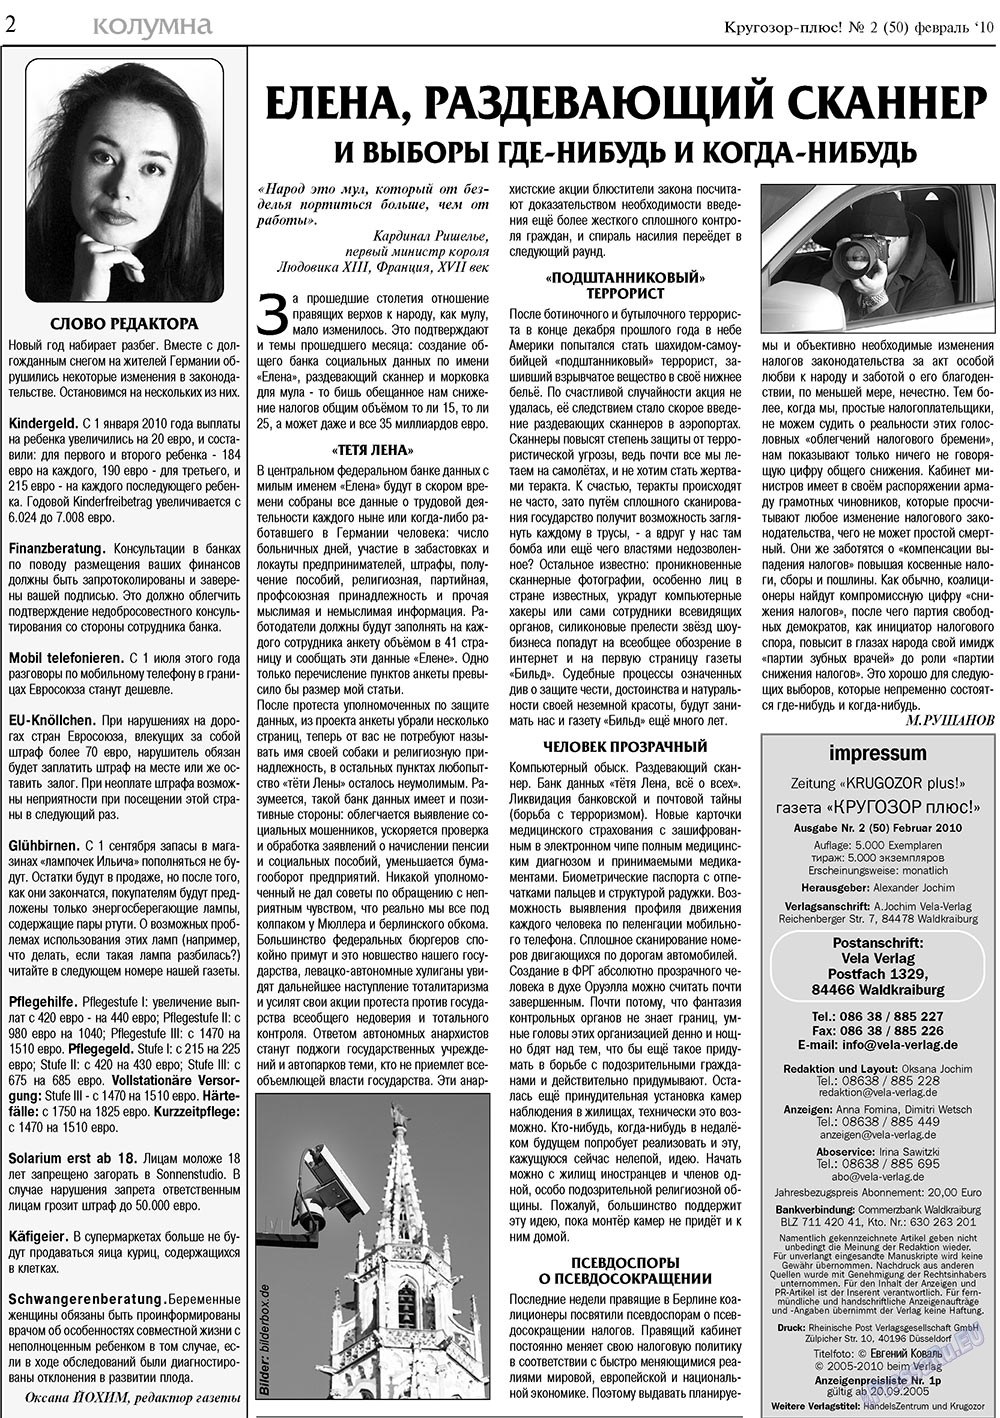 Krugozor plus! (Zeitung). 2010 Jahr, Ausgabe 2, Seite 2